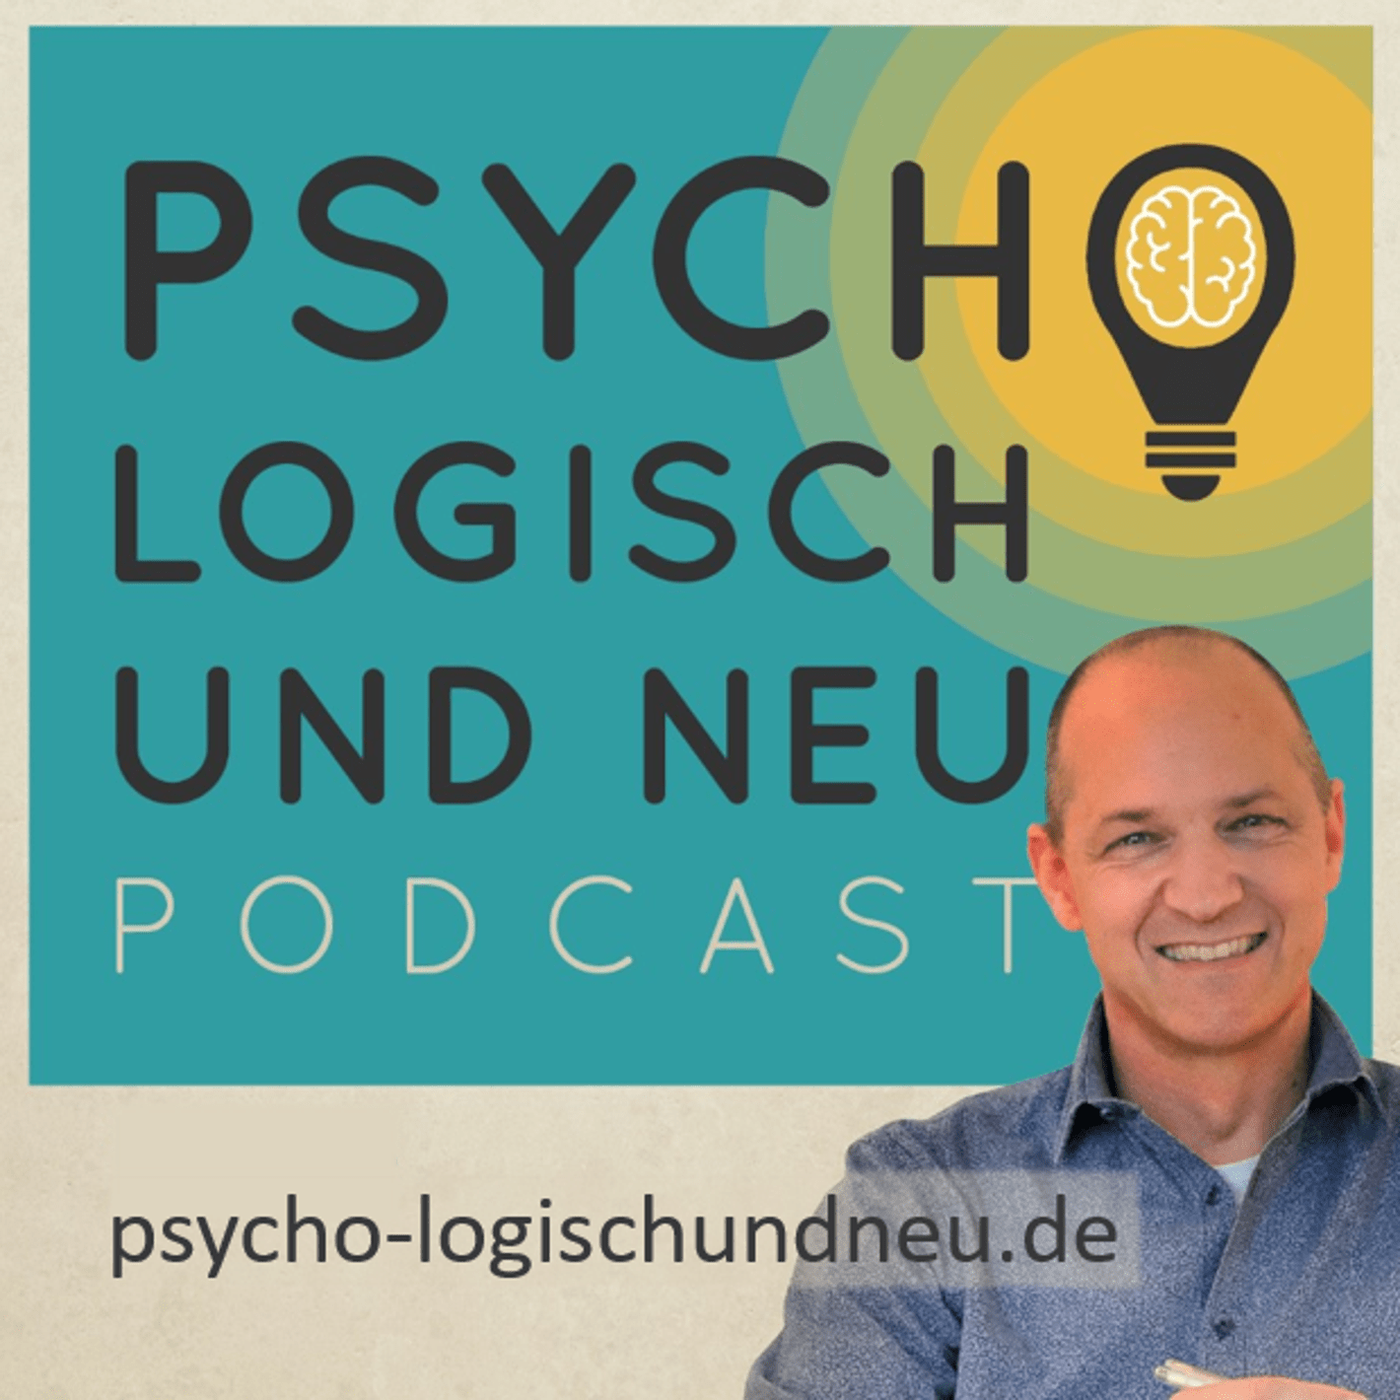 Psychologisch und neu, der Psychotherapie-Podcast